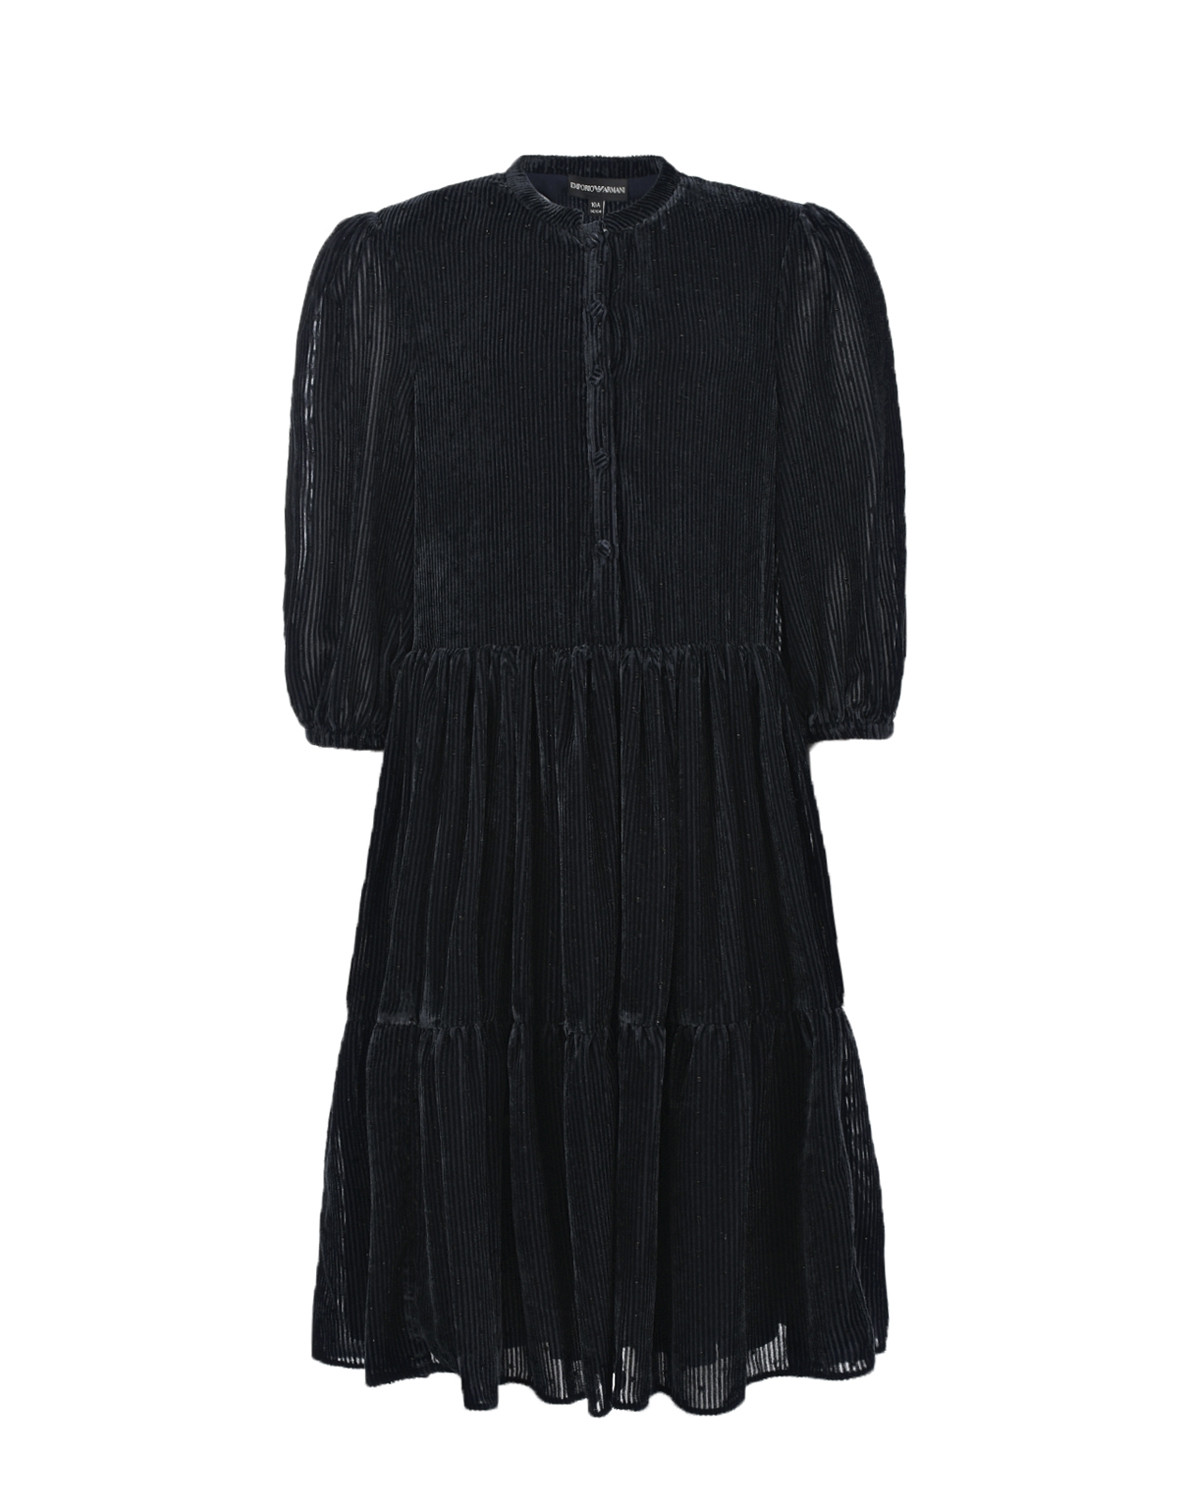 Черное платье с рукавами 3/4 Emporio Armani детское, размер 140, цвет черный Черное платье с рукавами 3/4 Emporio Armani детское - фото 1